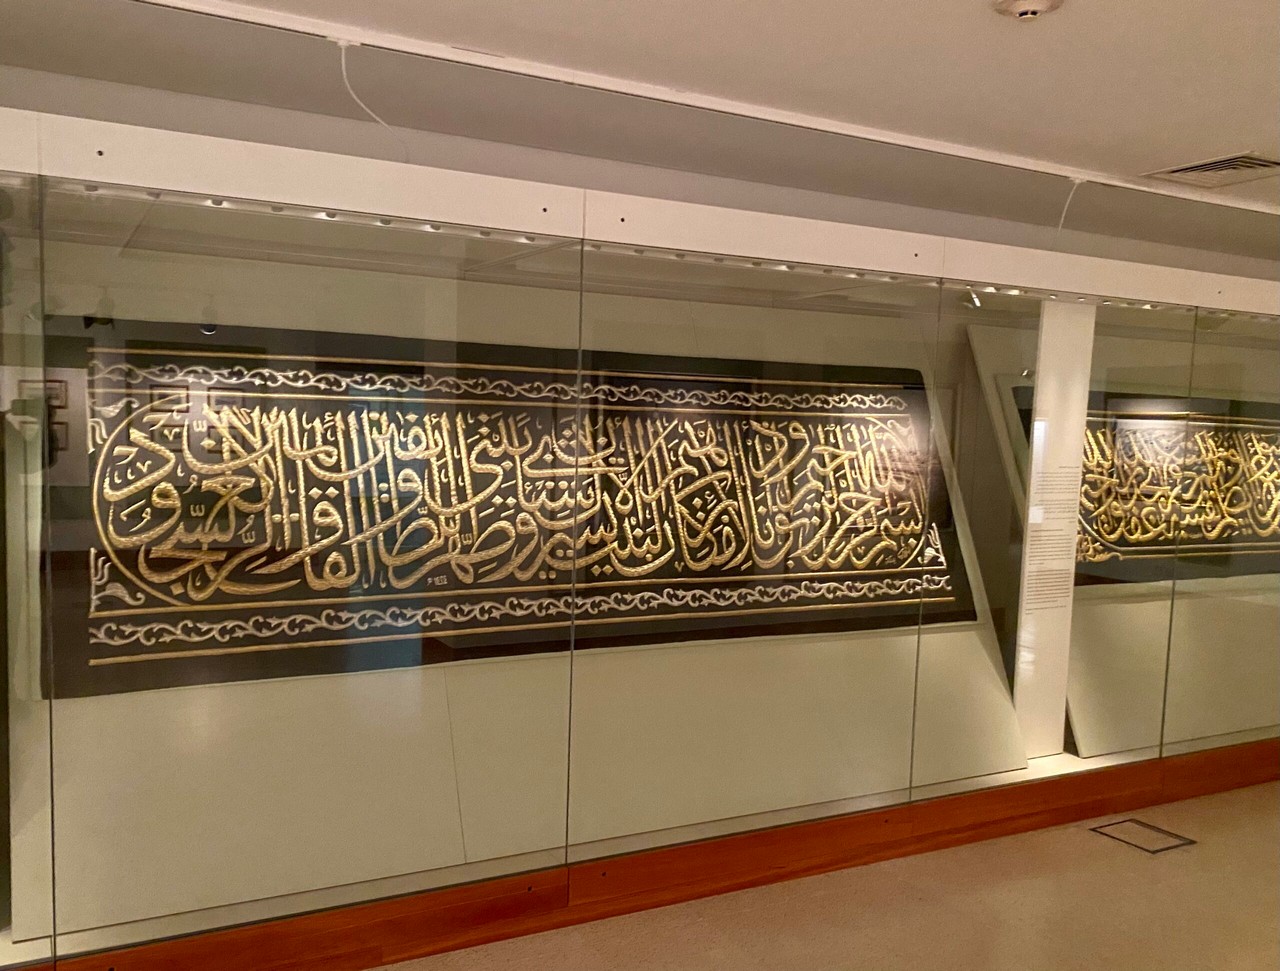 Museum of Islamic Civilization exhibit, Sharjah